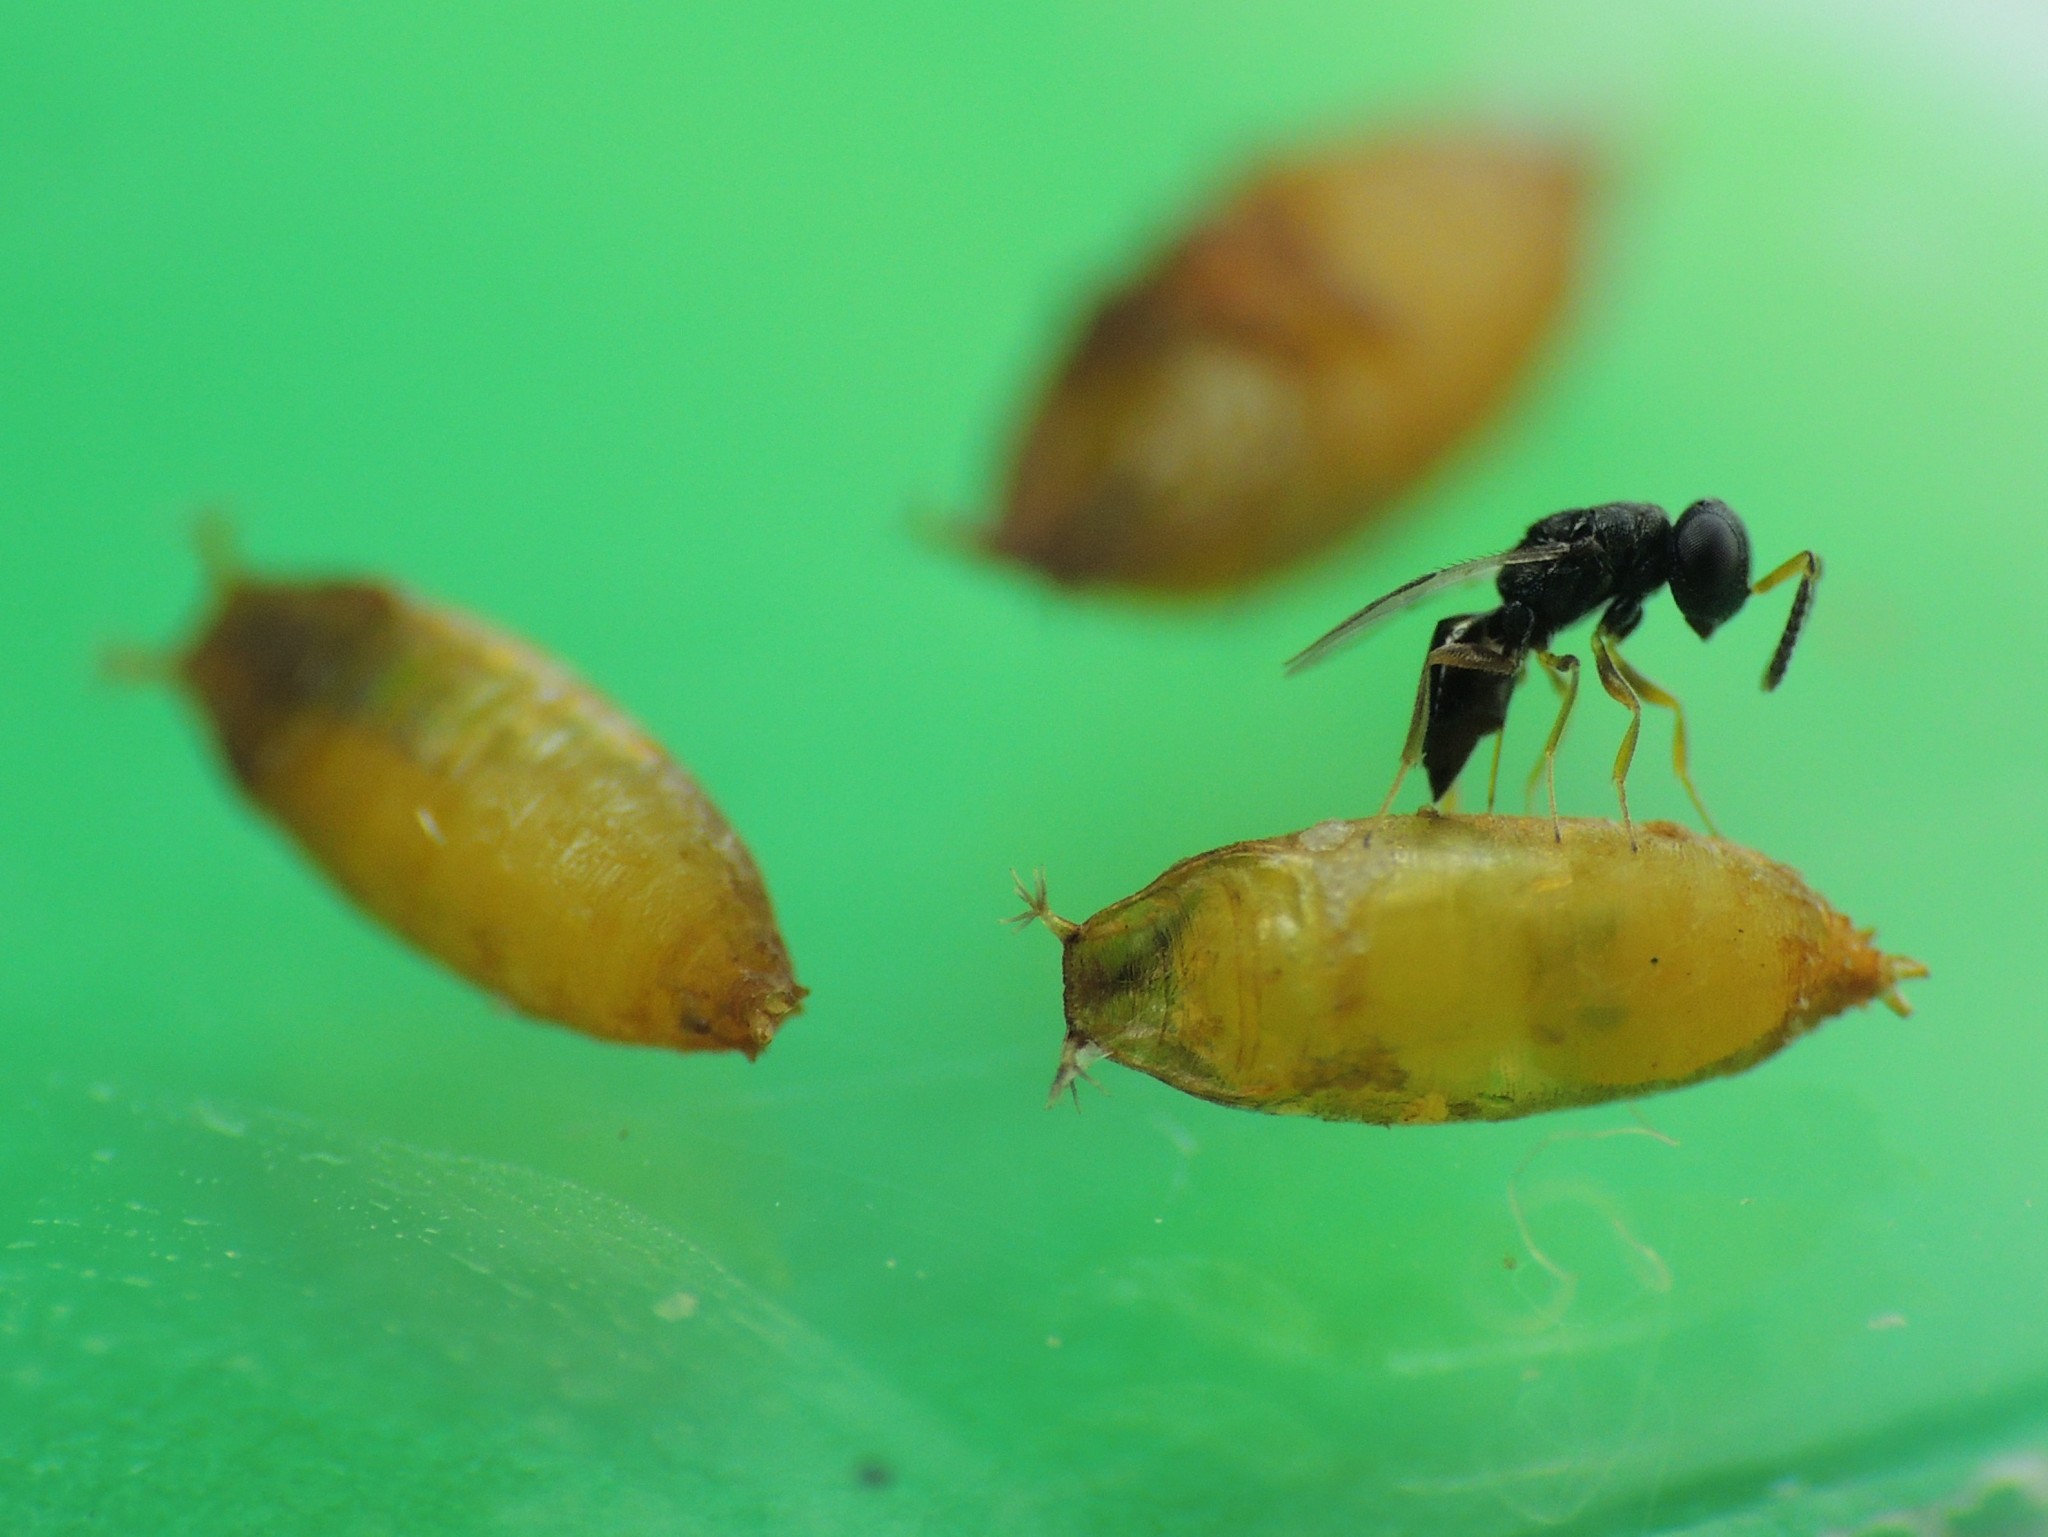 Liberan agente de control biol贸gico para Drosophila Suzukii en cultivos org谩nicos